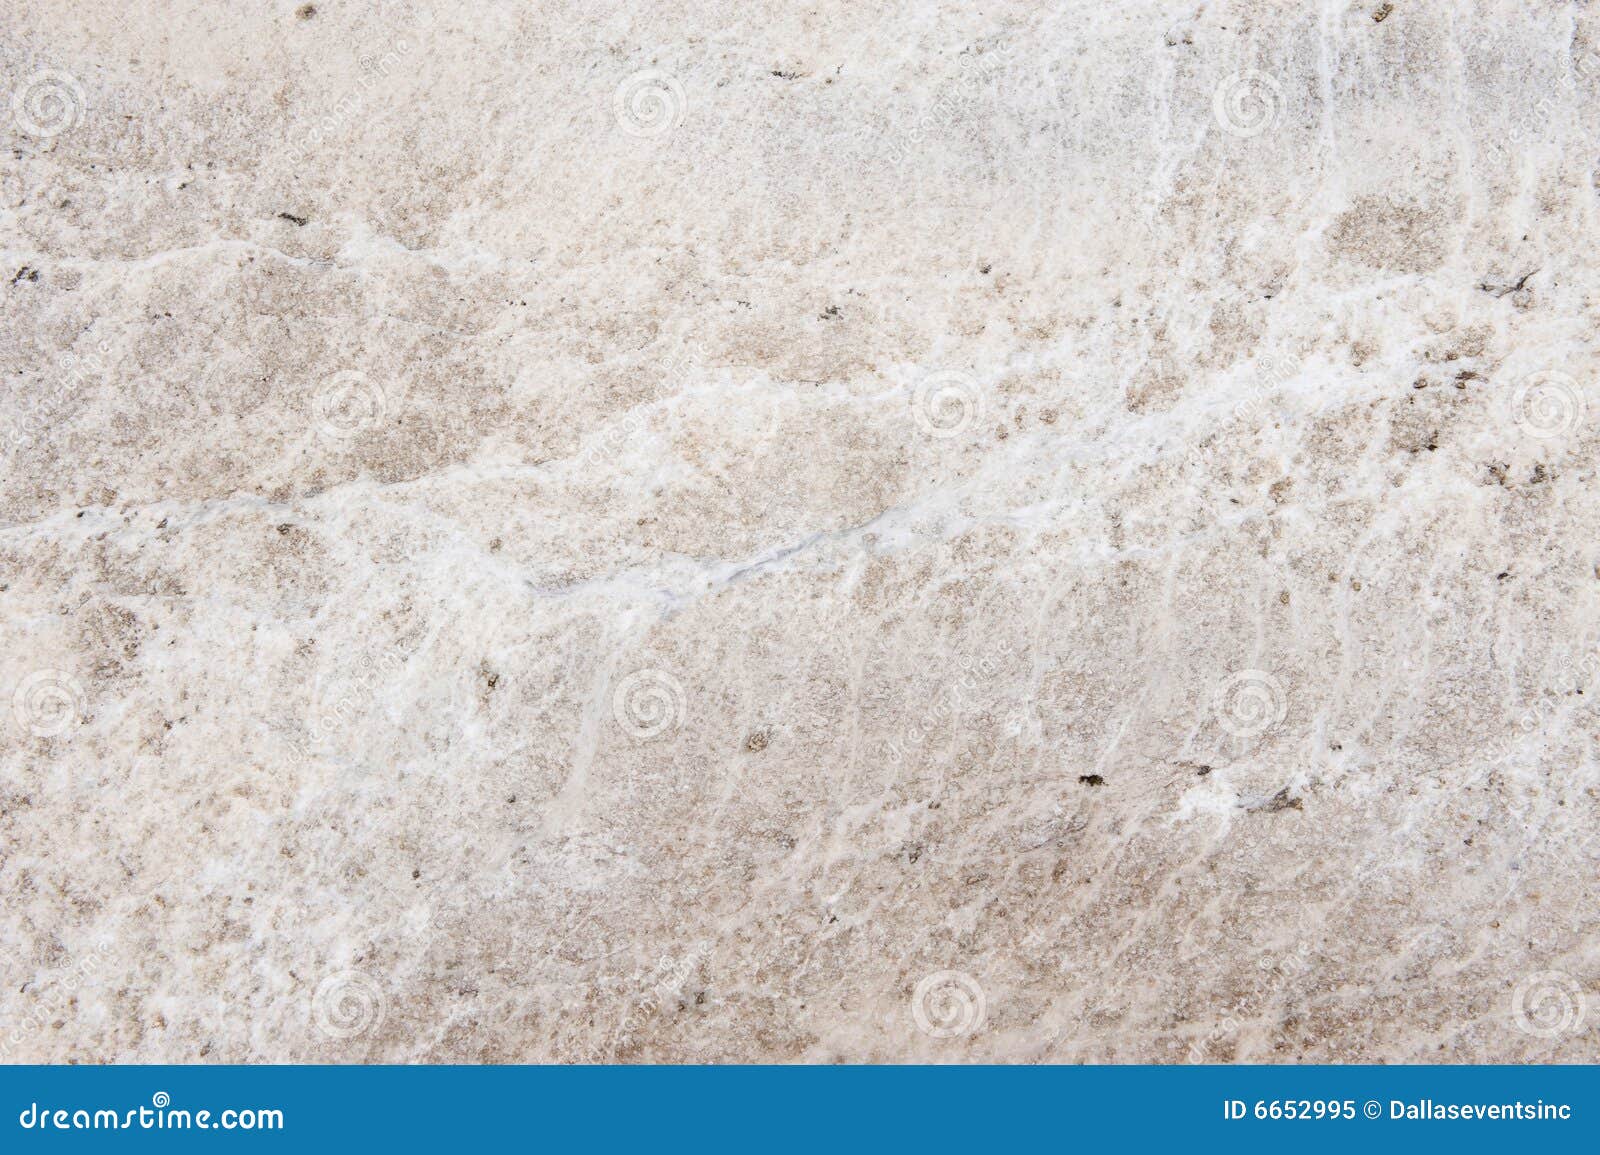 Motivatie voetstappen Magnetisch Wit graniet stock afbeelding. Image of marmer, geologie - 6652995